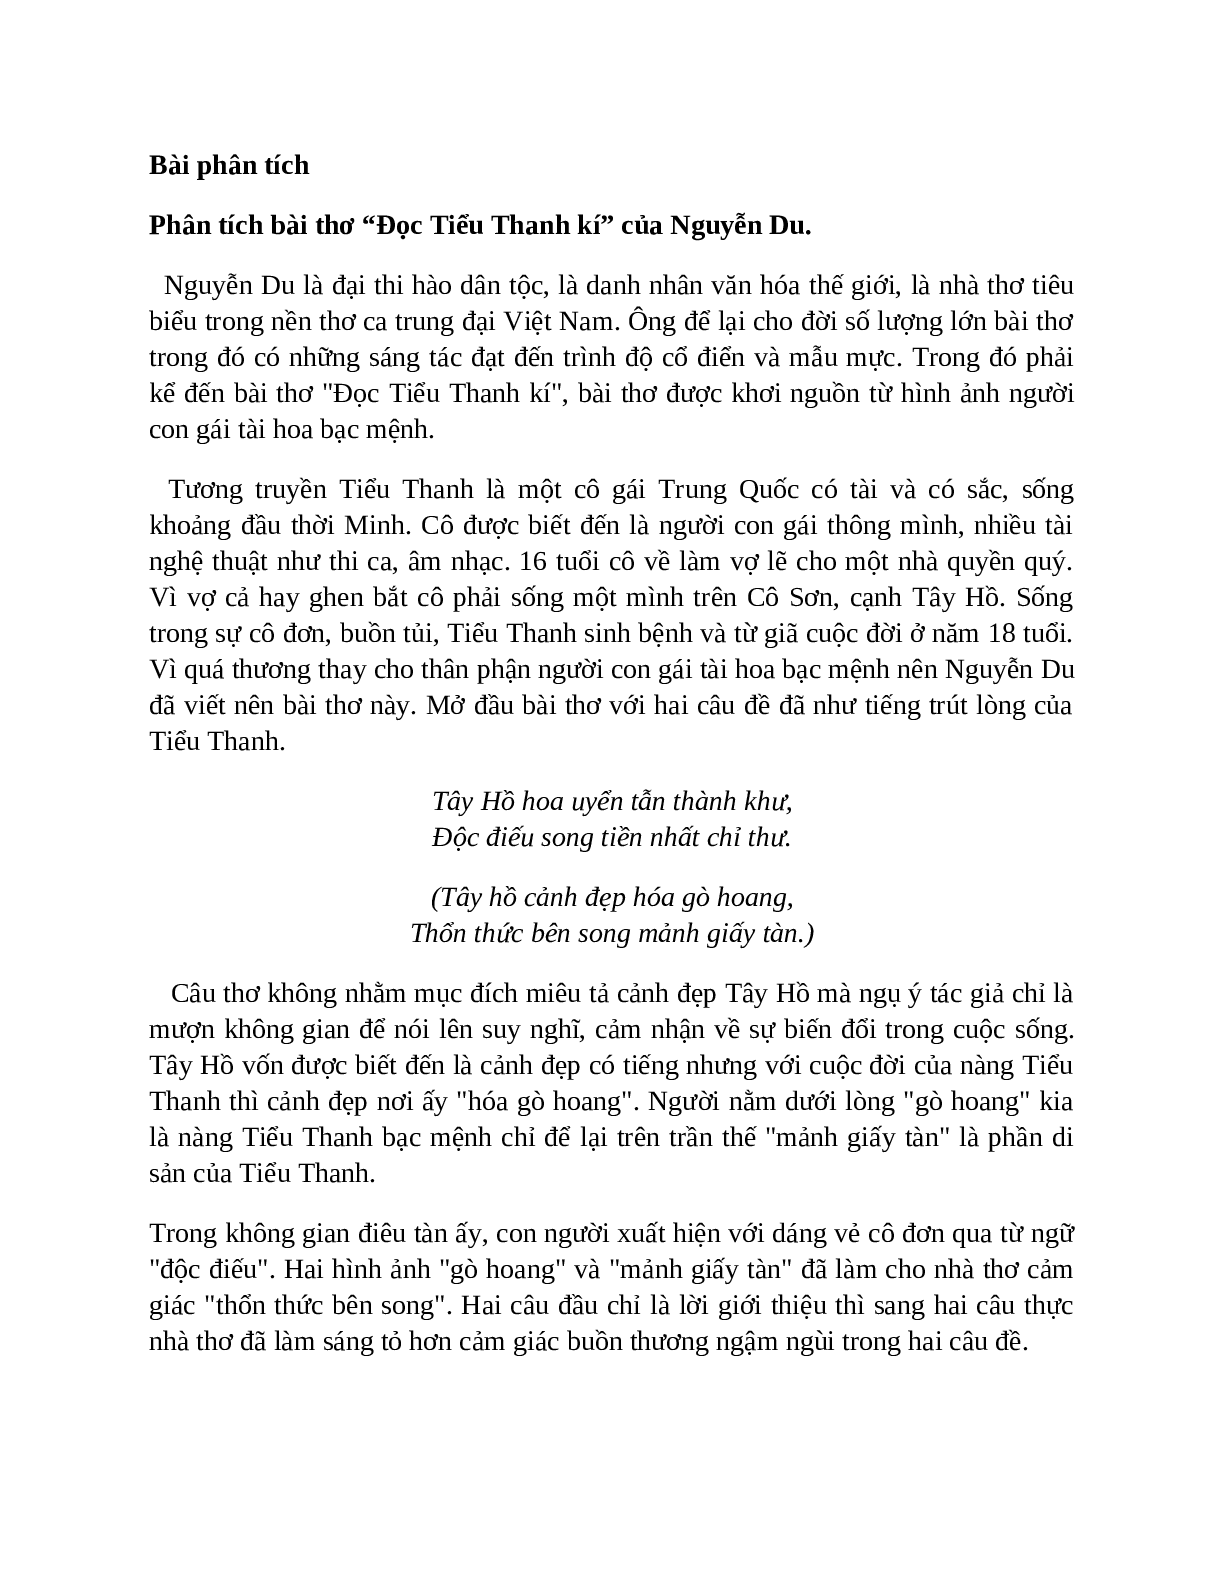 Sơ đồ tư duy bài Đọc Tiểu Thanh kí dễ nhớ, ngắn nhất - Ngữ văn lớp 10 (trang 8)